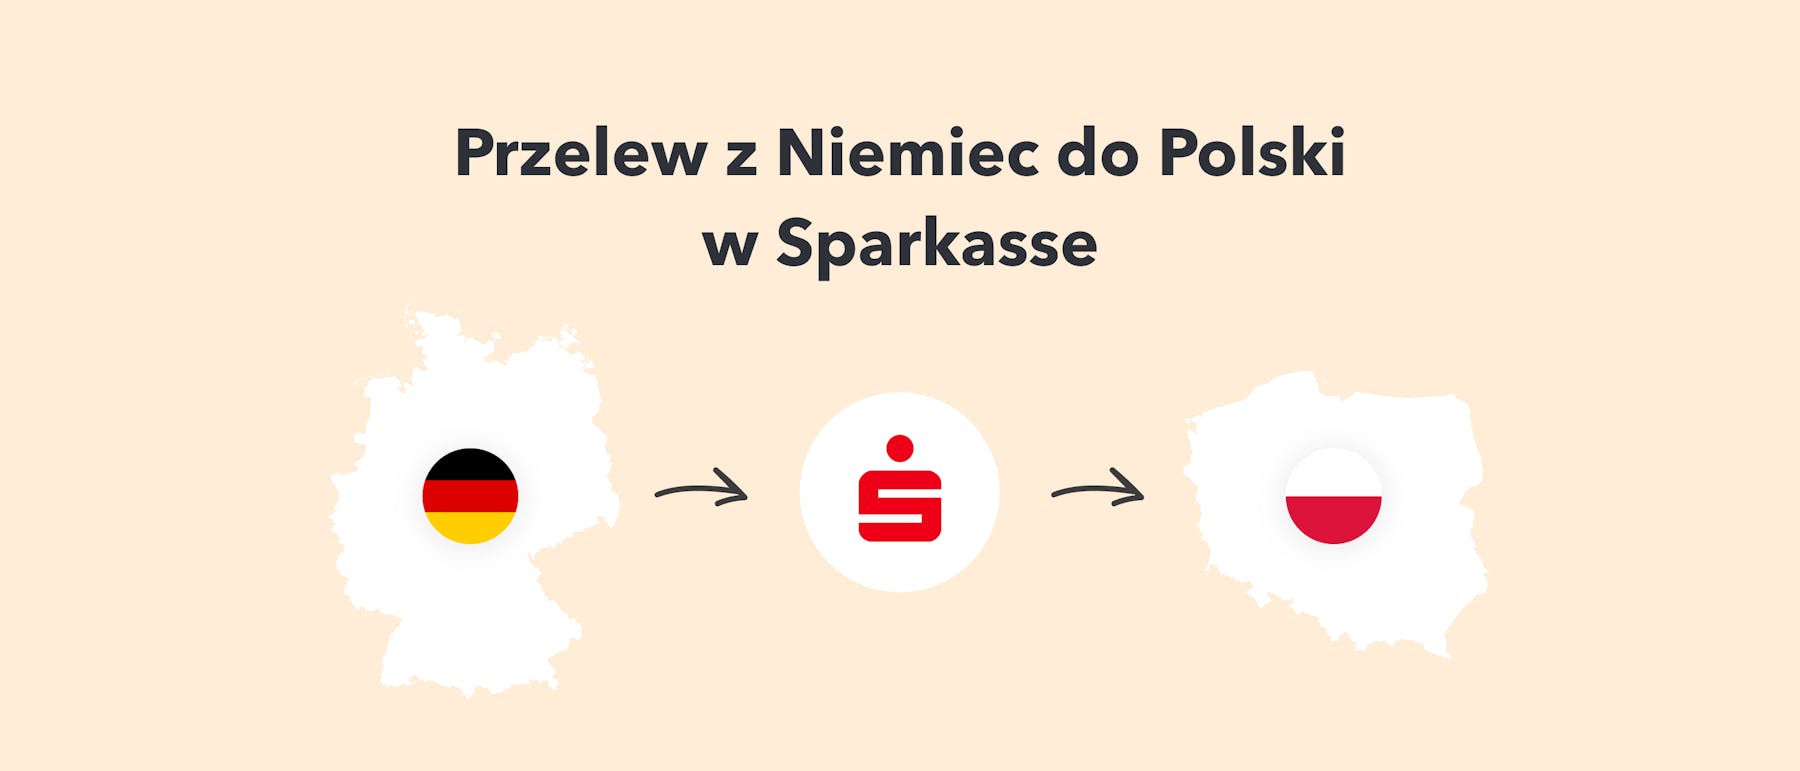 Przelew do Polski Sparkasse